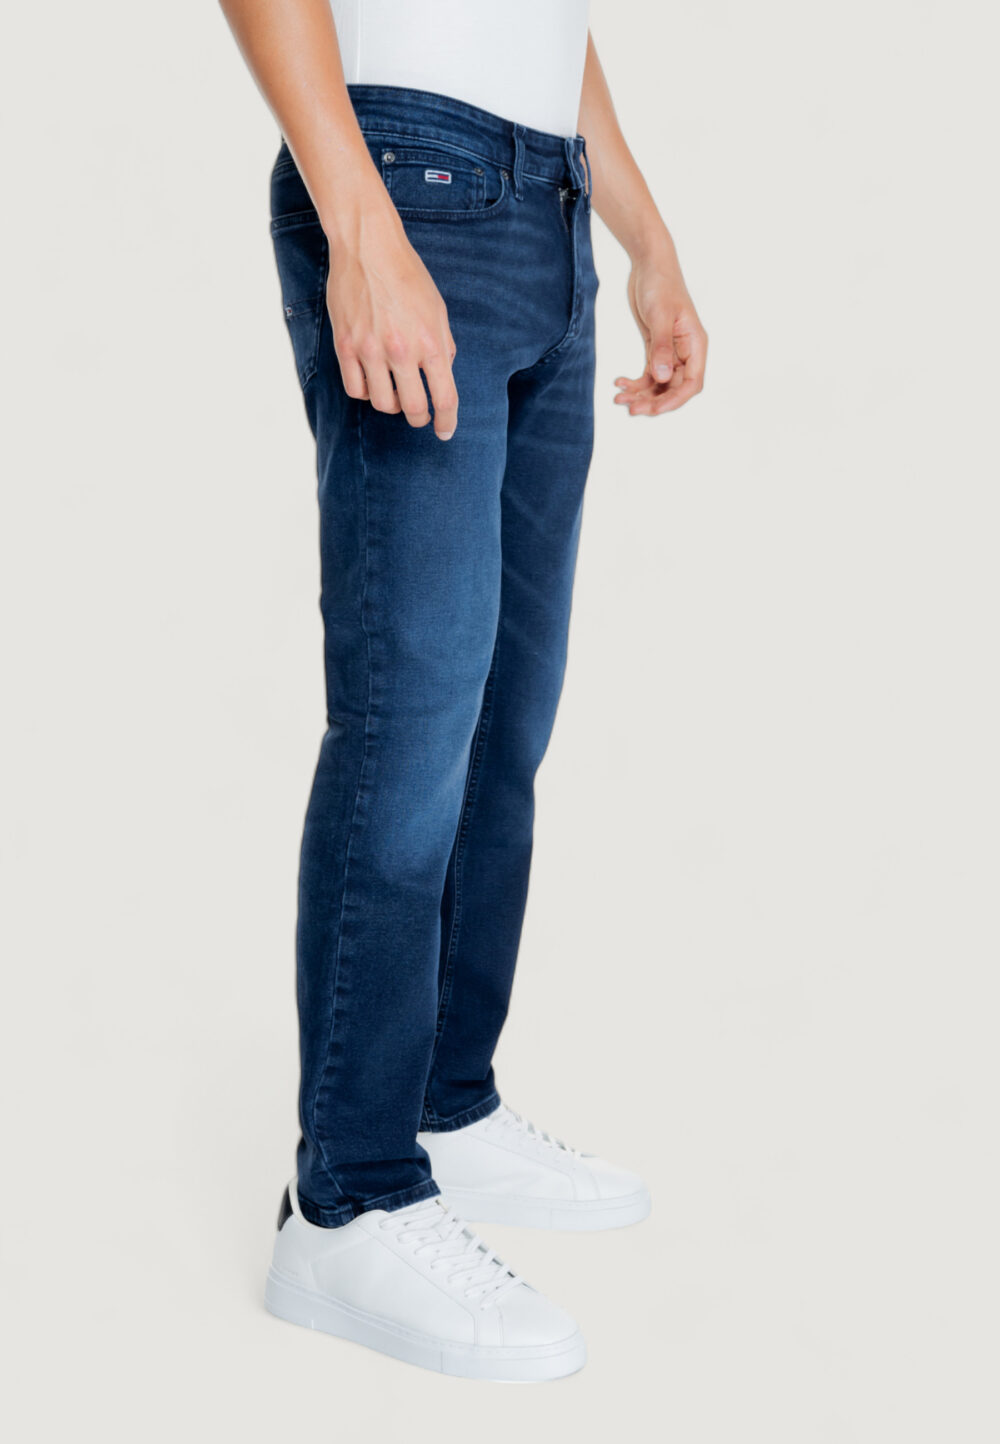 Jeans slim Tommy Hilfiger SCANTON CH1263 Denim scuro - Foto 5